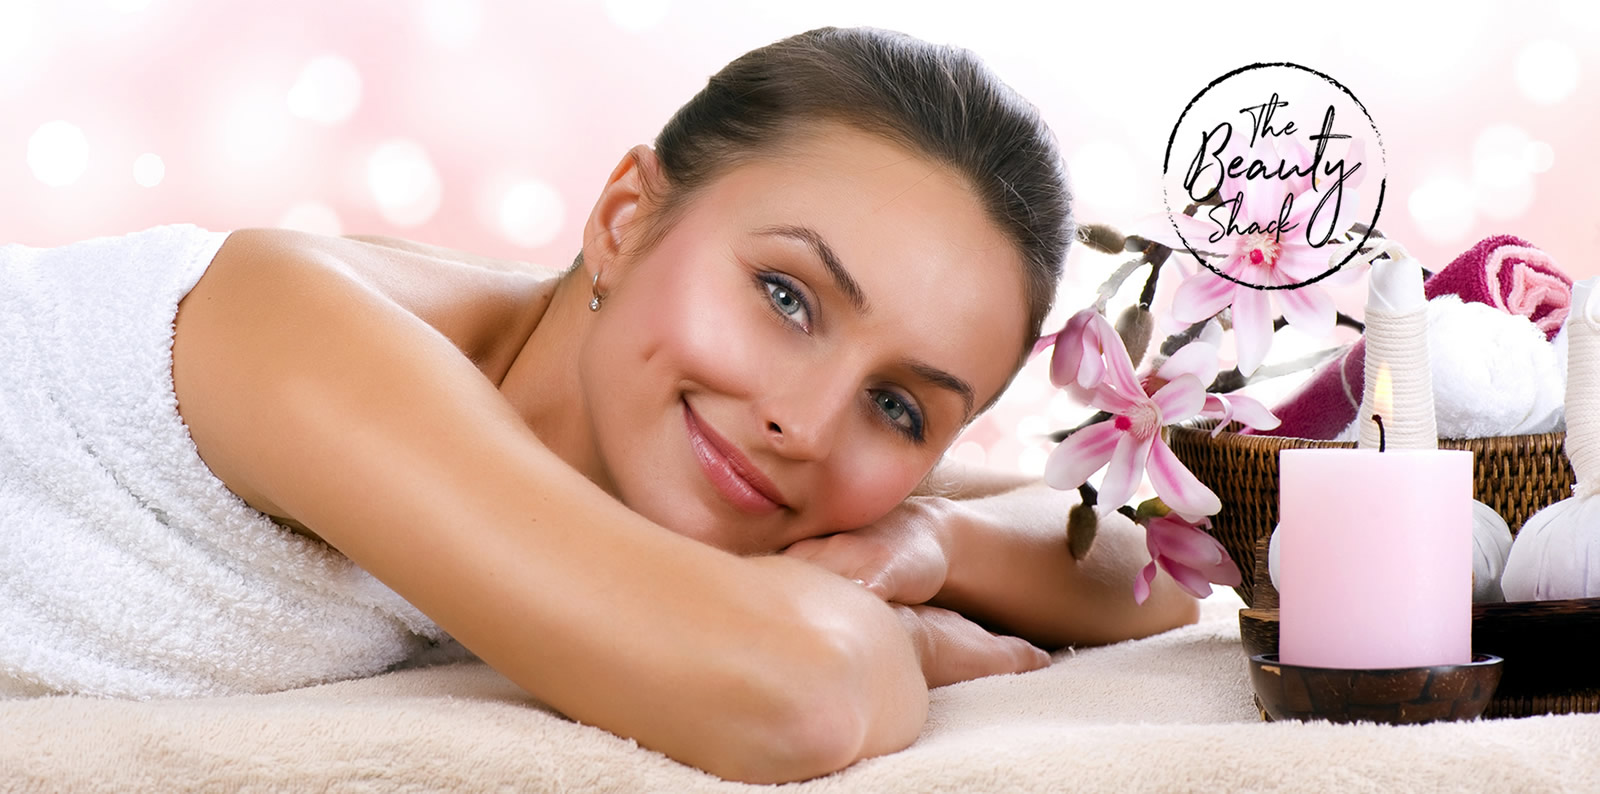 Woman enjoying massage - The Beauty Shack Salon Logo